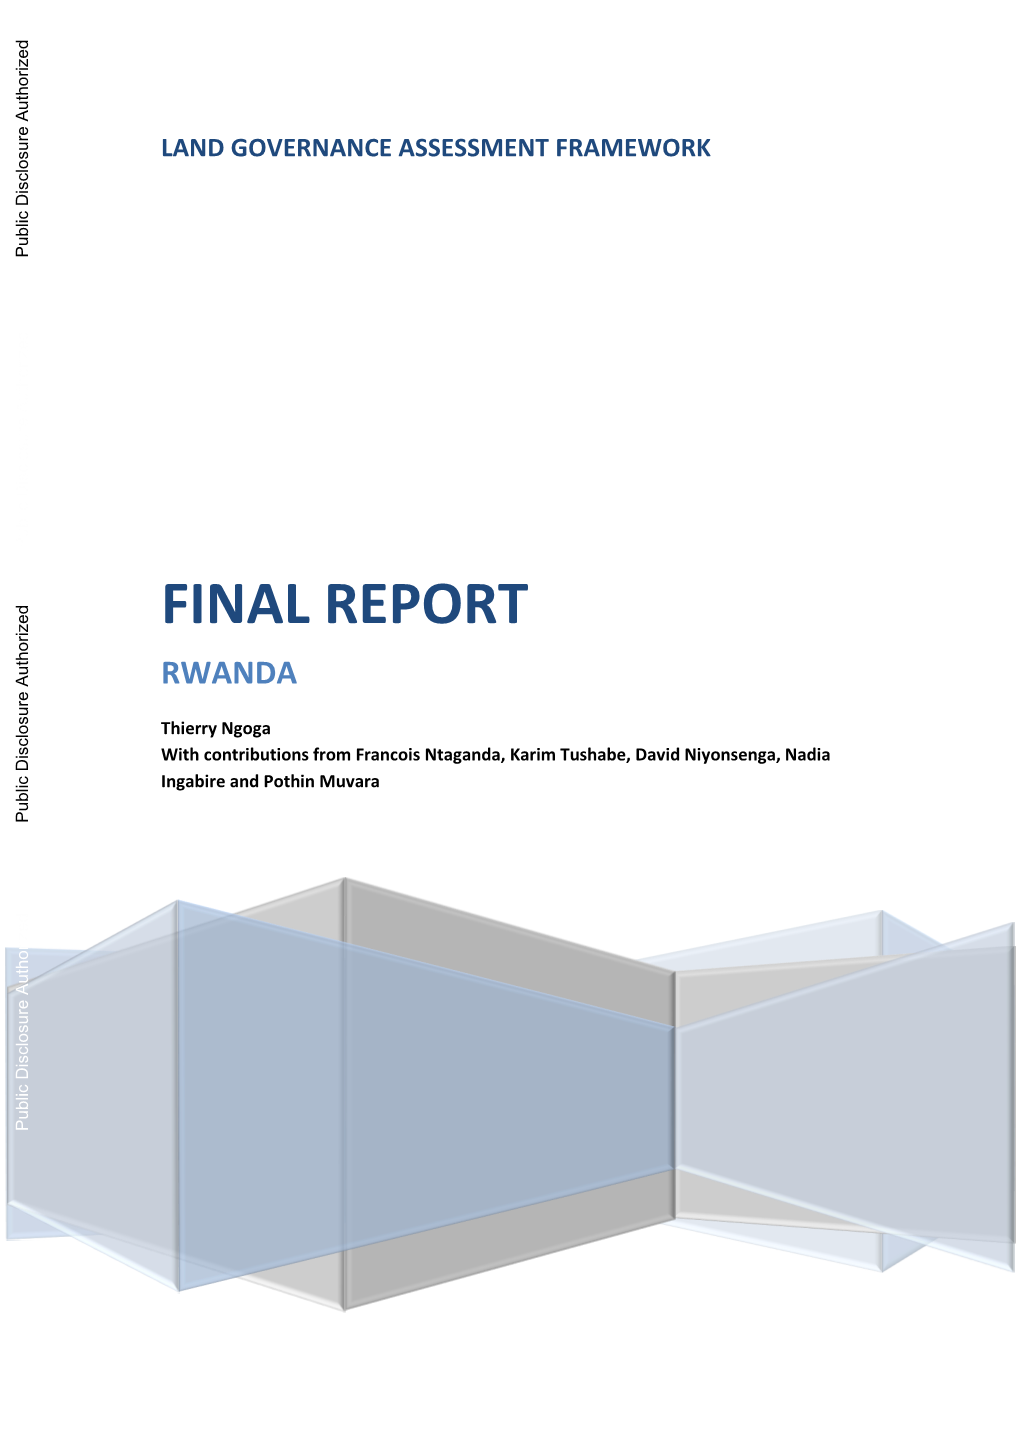 Final Report Rwanda